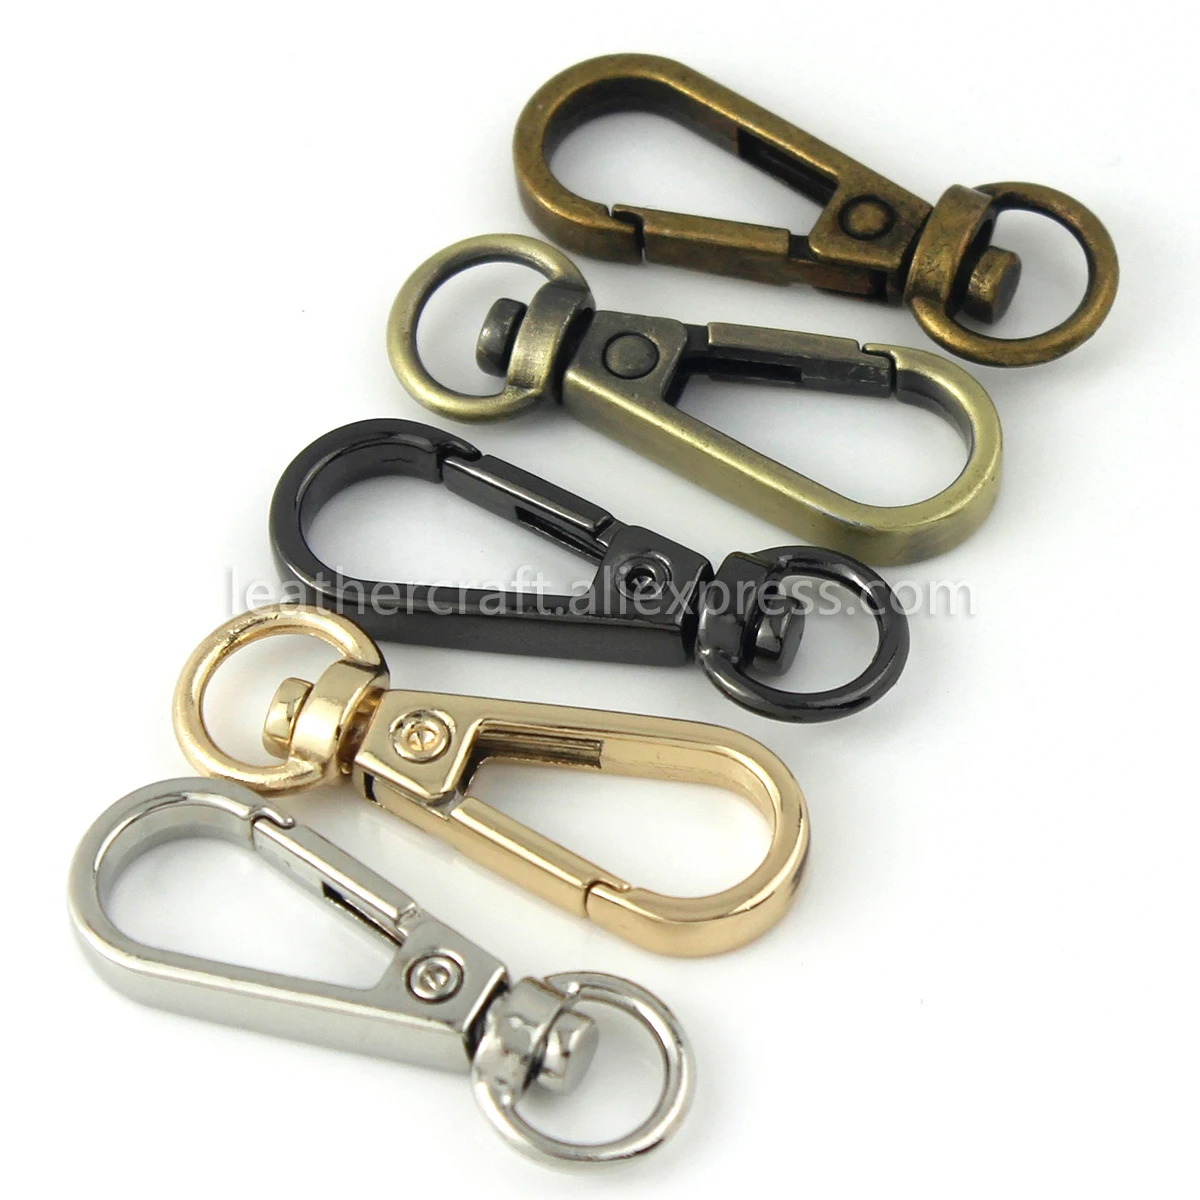 Αγορά Τέχνες, χειροτεχνίες &; ράψιμο  1pcs Metal Swivel O-ring Eye  Snap Hook Trigger Clasps Clips for Leather Craft Bag Strap Belt Webbing  Keychain Small Size